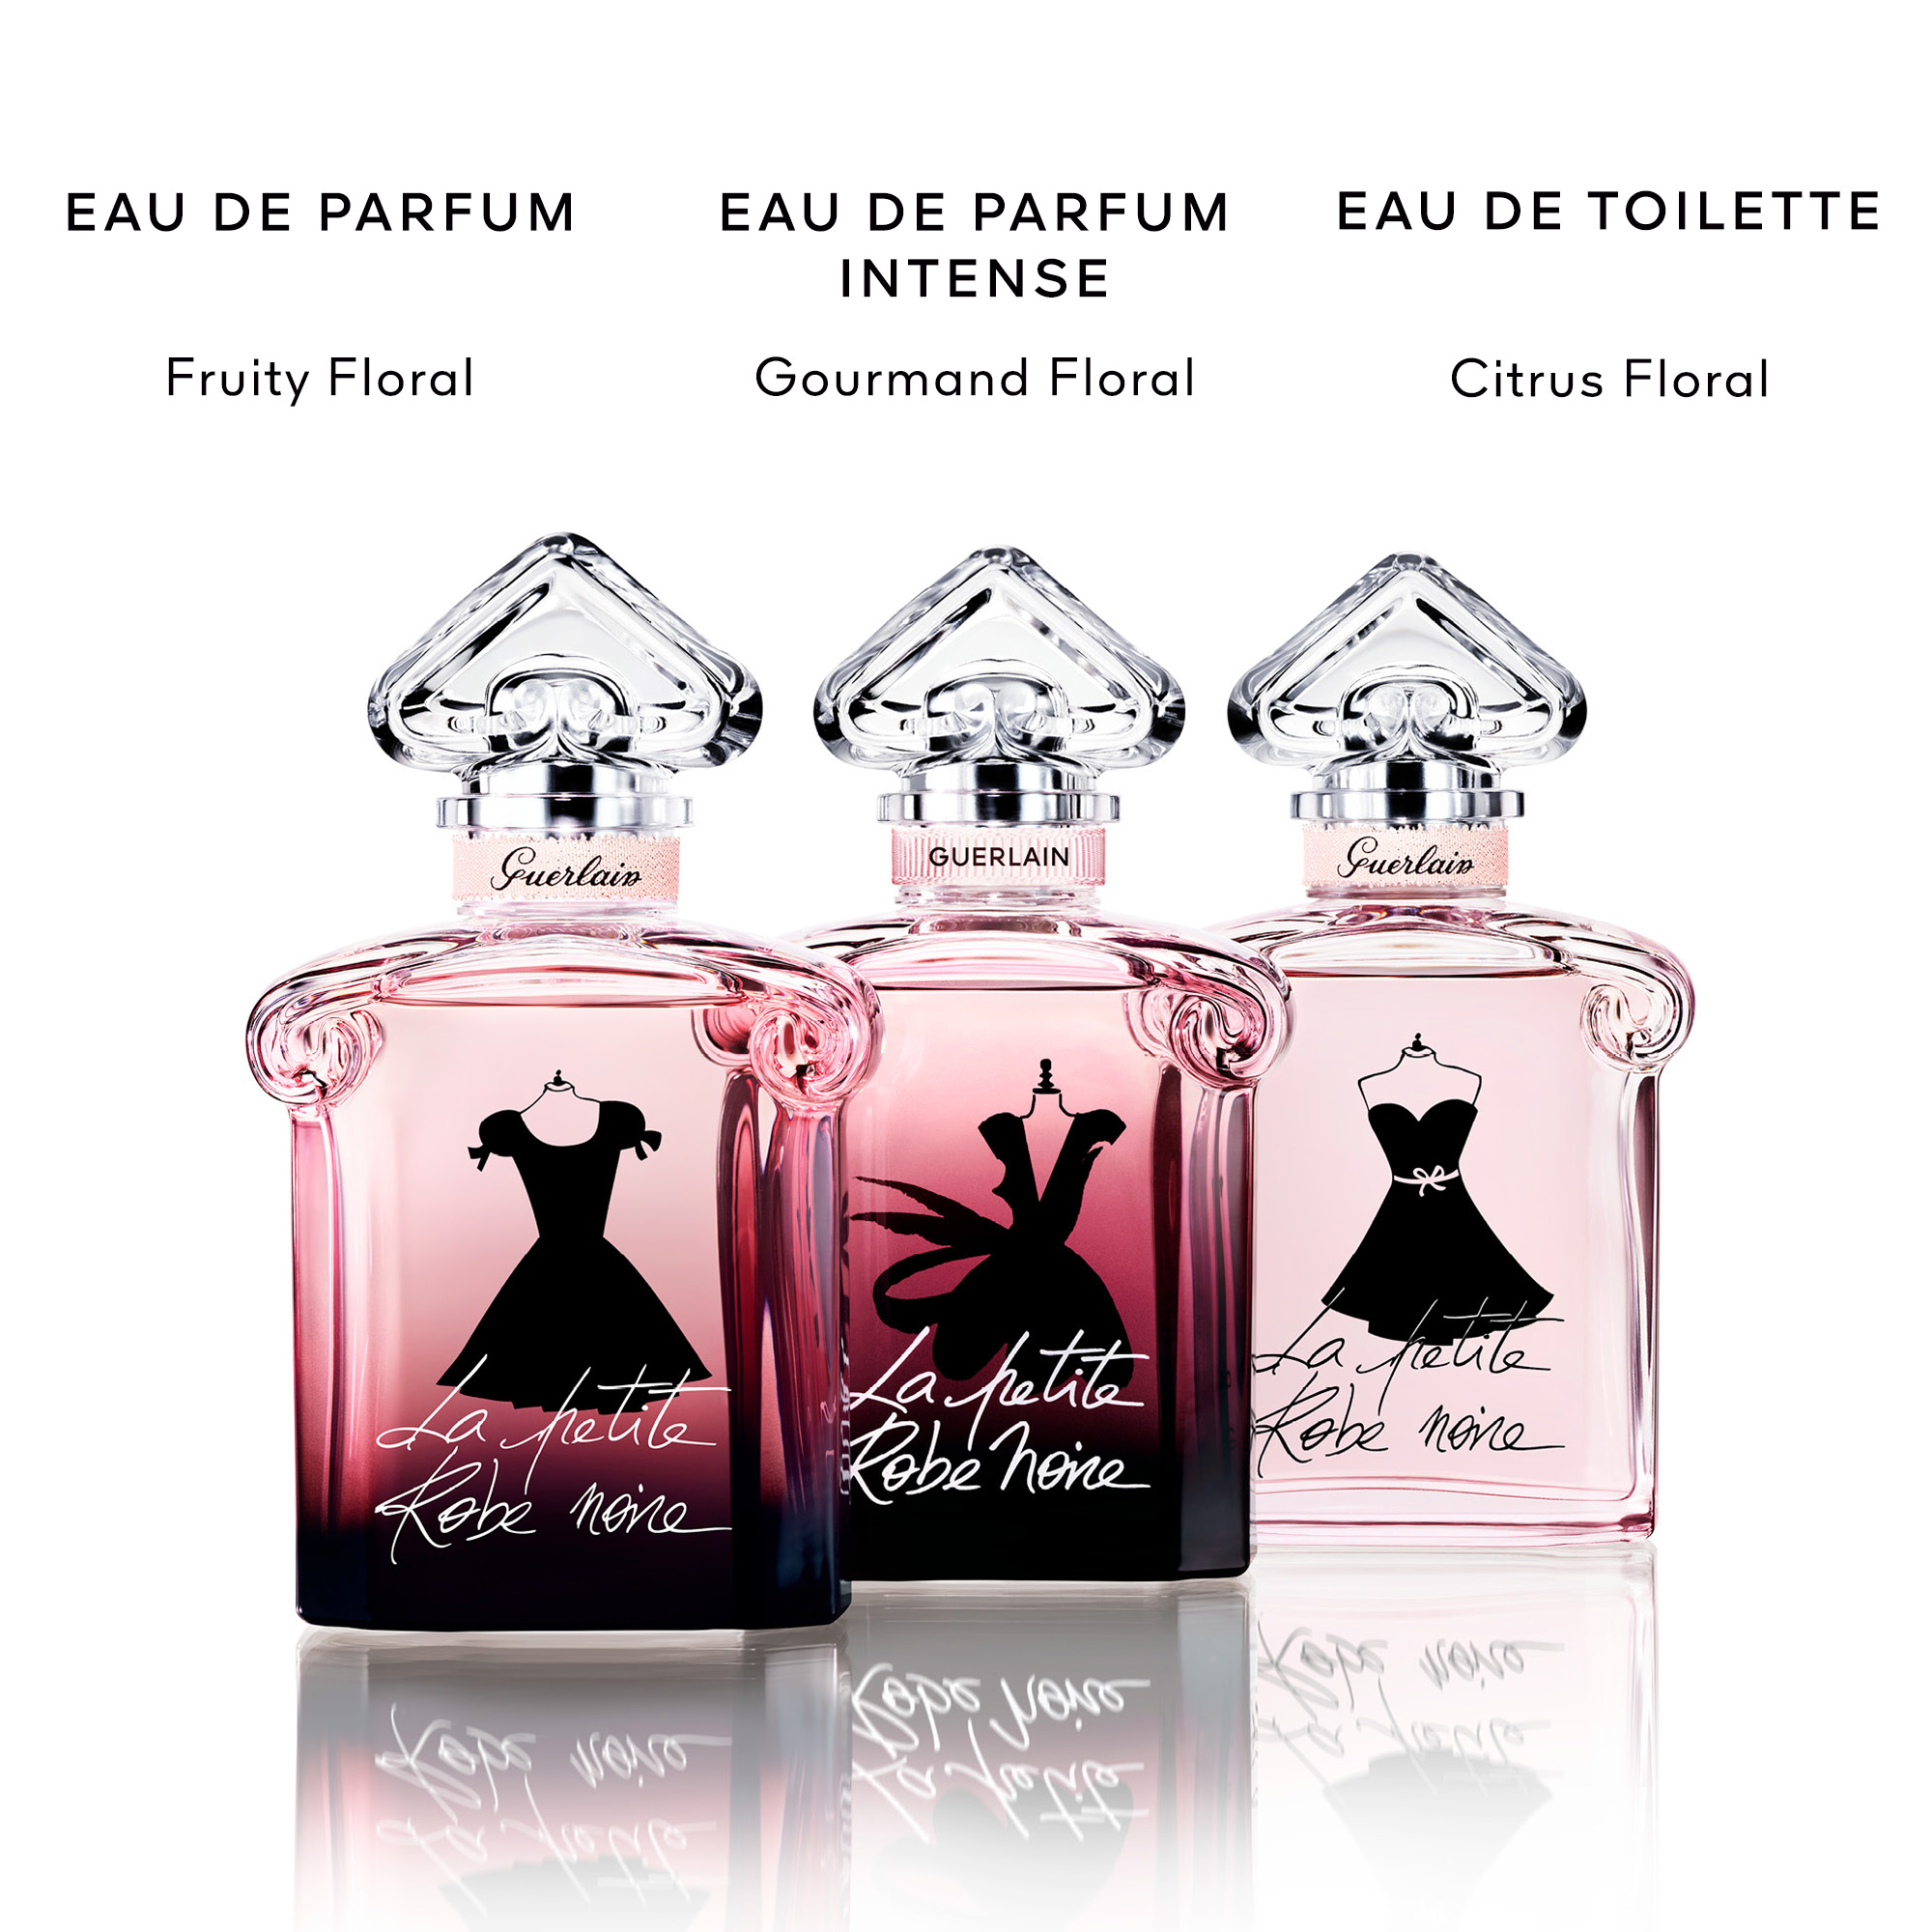 GUERLAIN La Petite Robe Noire Eau de Parfum Intense Review